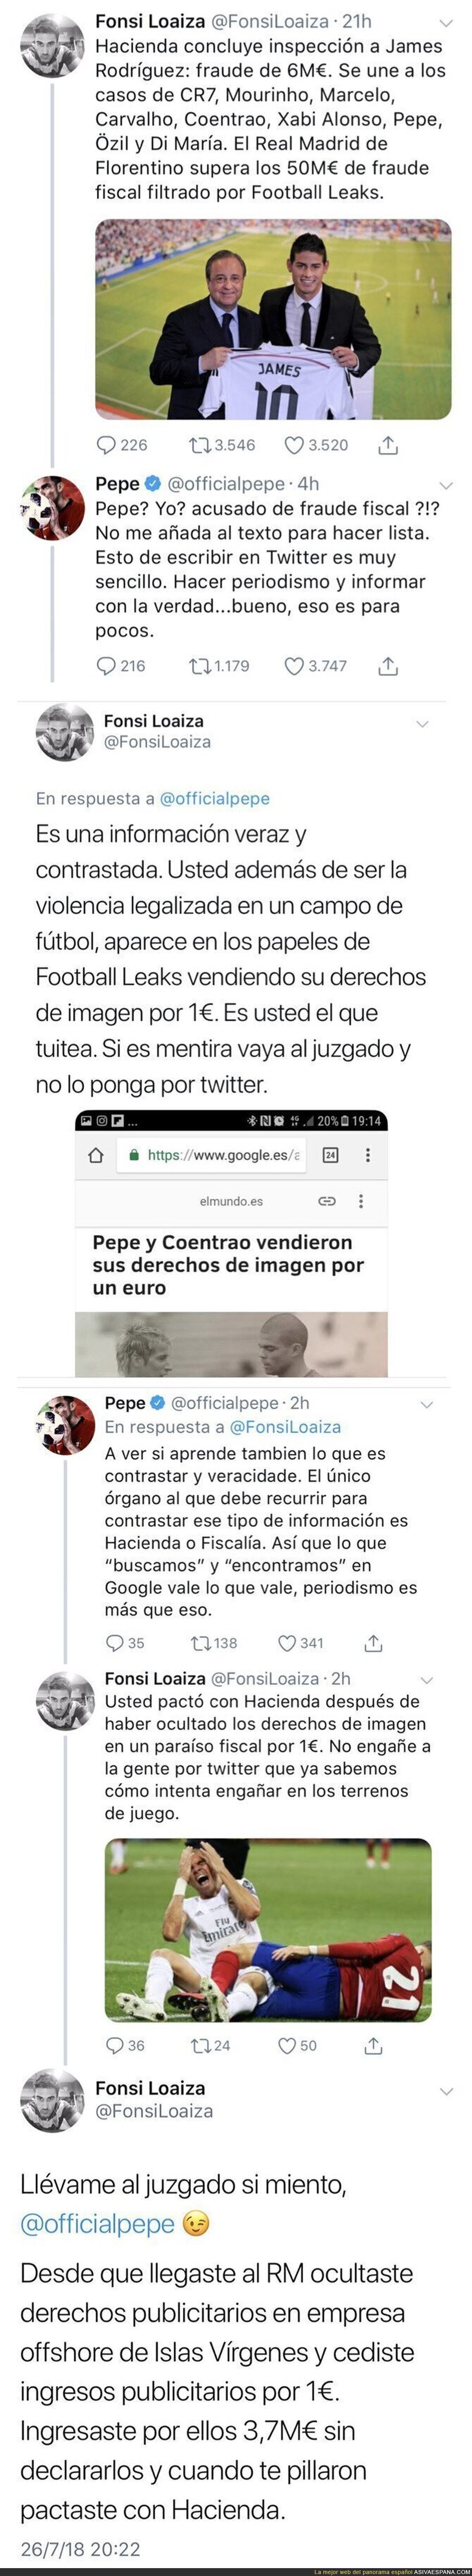 Batalla dialéctica entre Fonsi Loaiza y Pepe por el presunto fraude fiscal del ex-defensa del Real Madrid a Hacienda